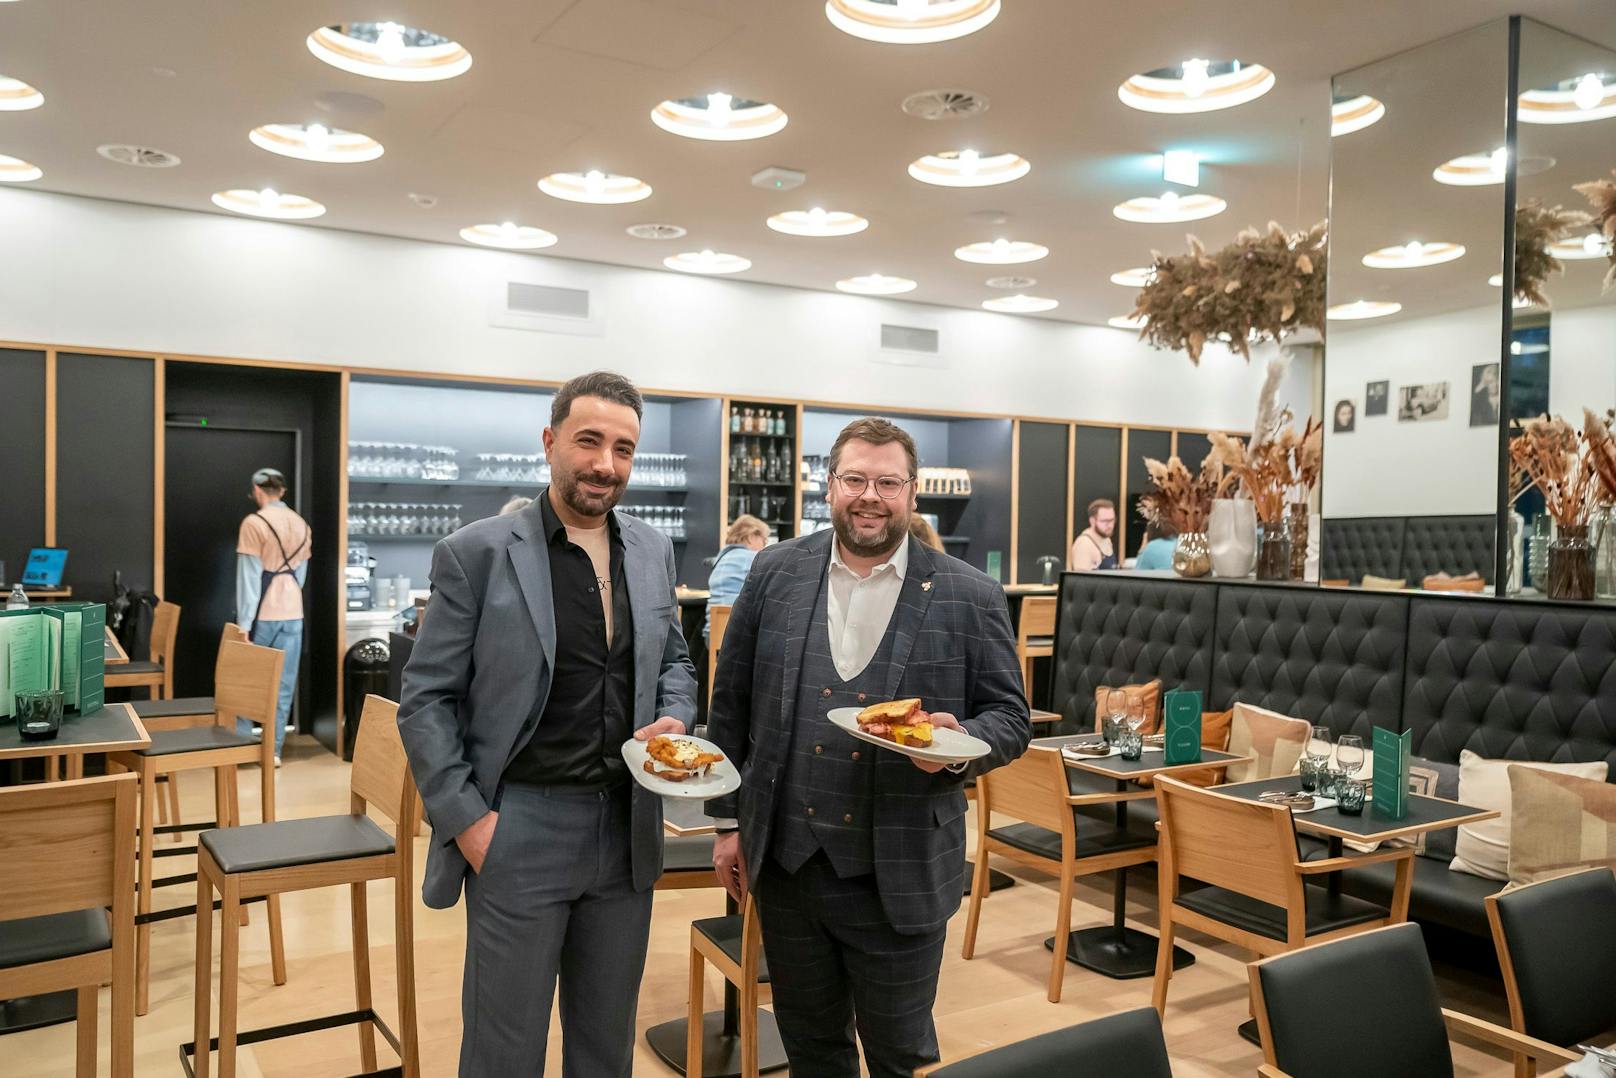 Arif Koc ist Betriebsleiter und Jürgen Dulhofer ist Geschäftsführer des neuen Cafés "Trude und Töchter" im Wien Museum